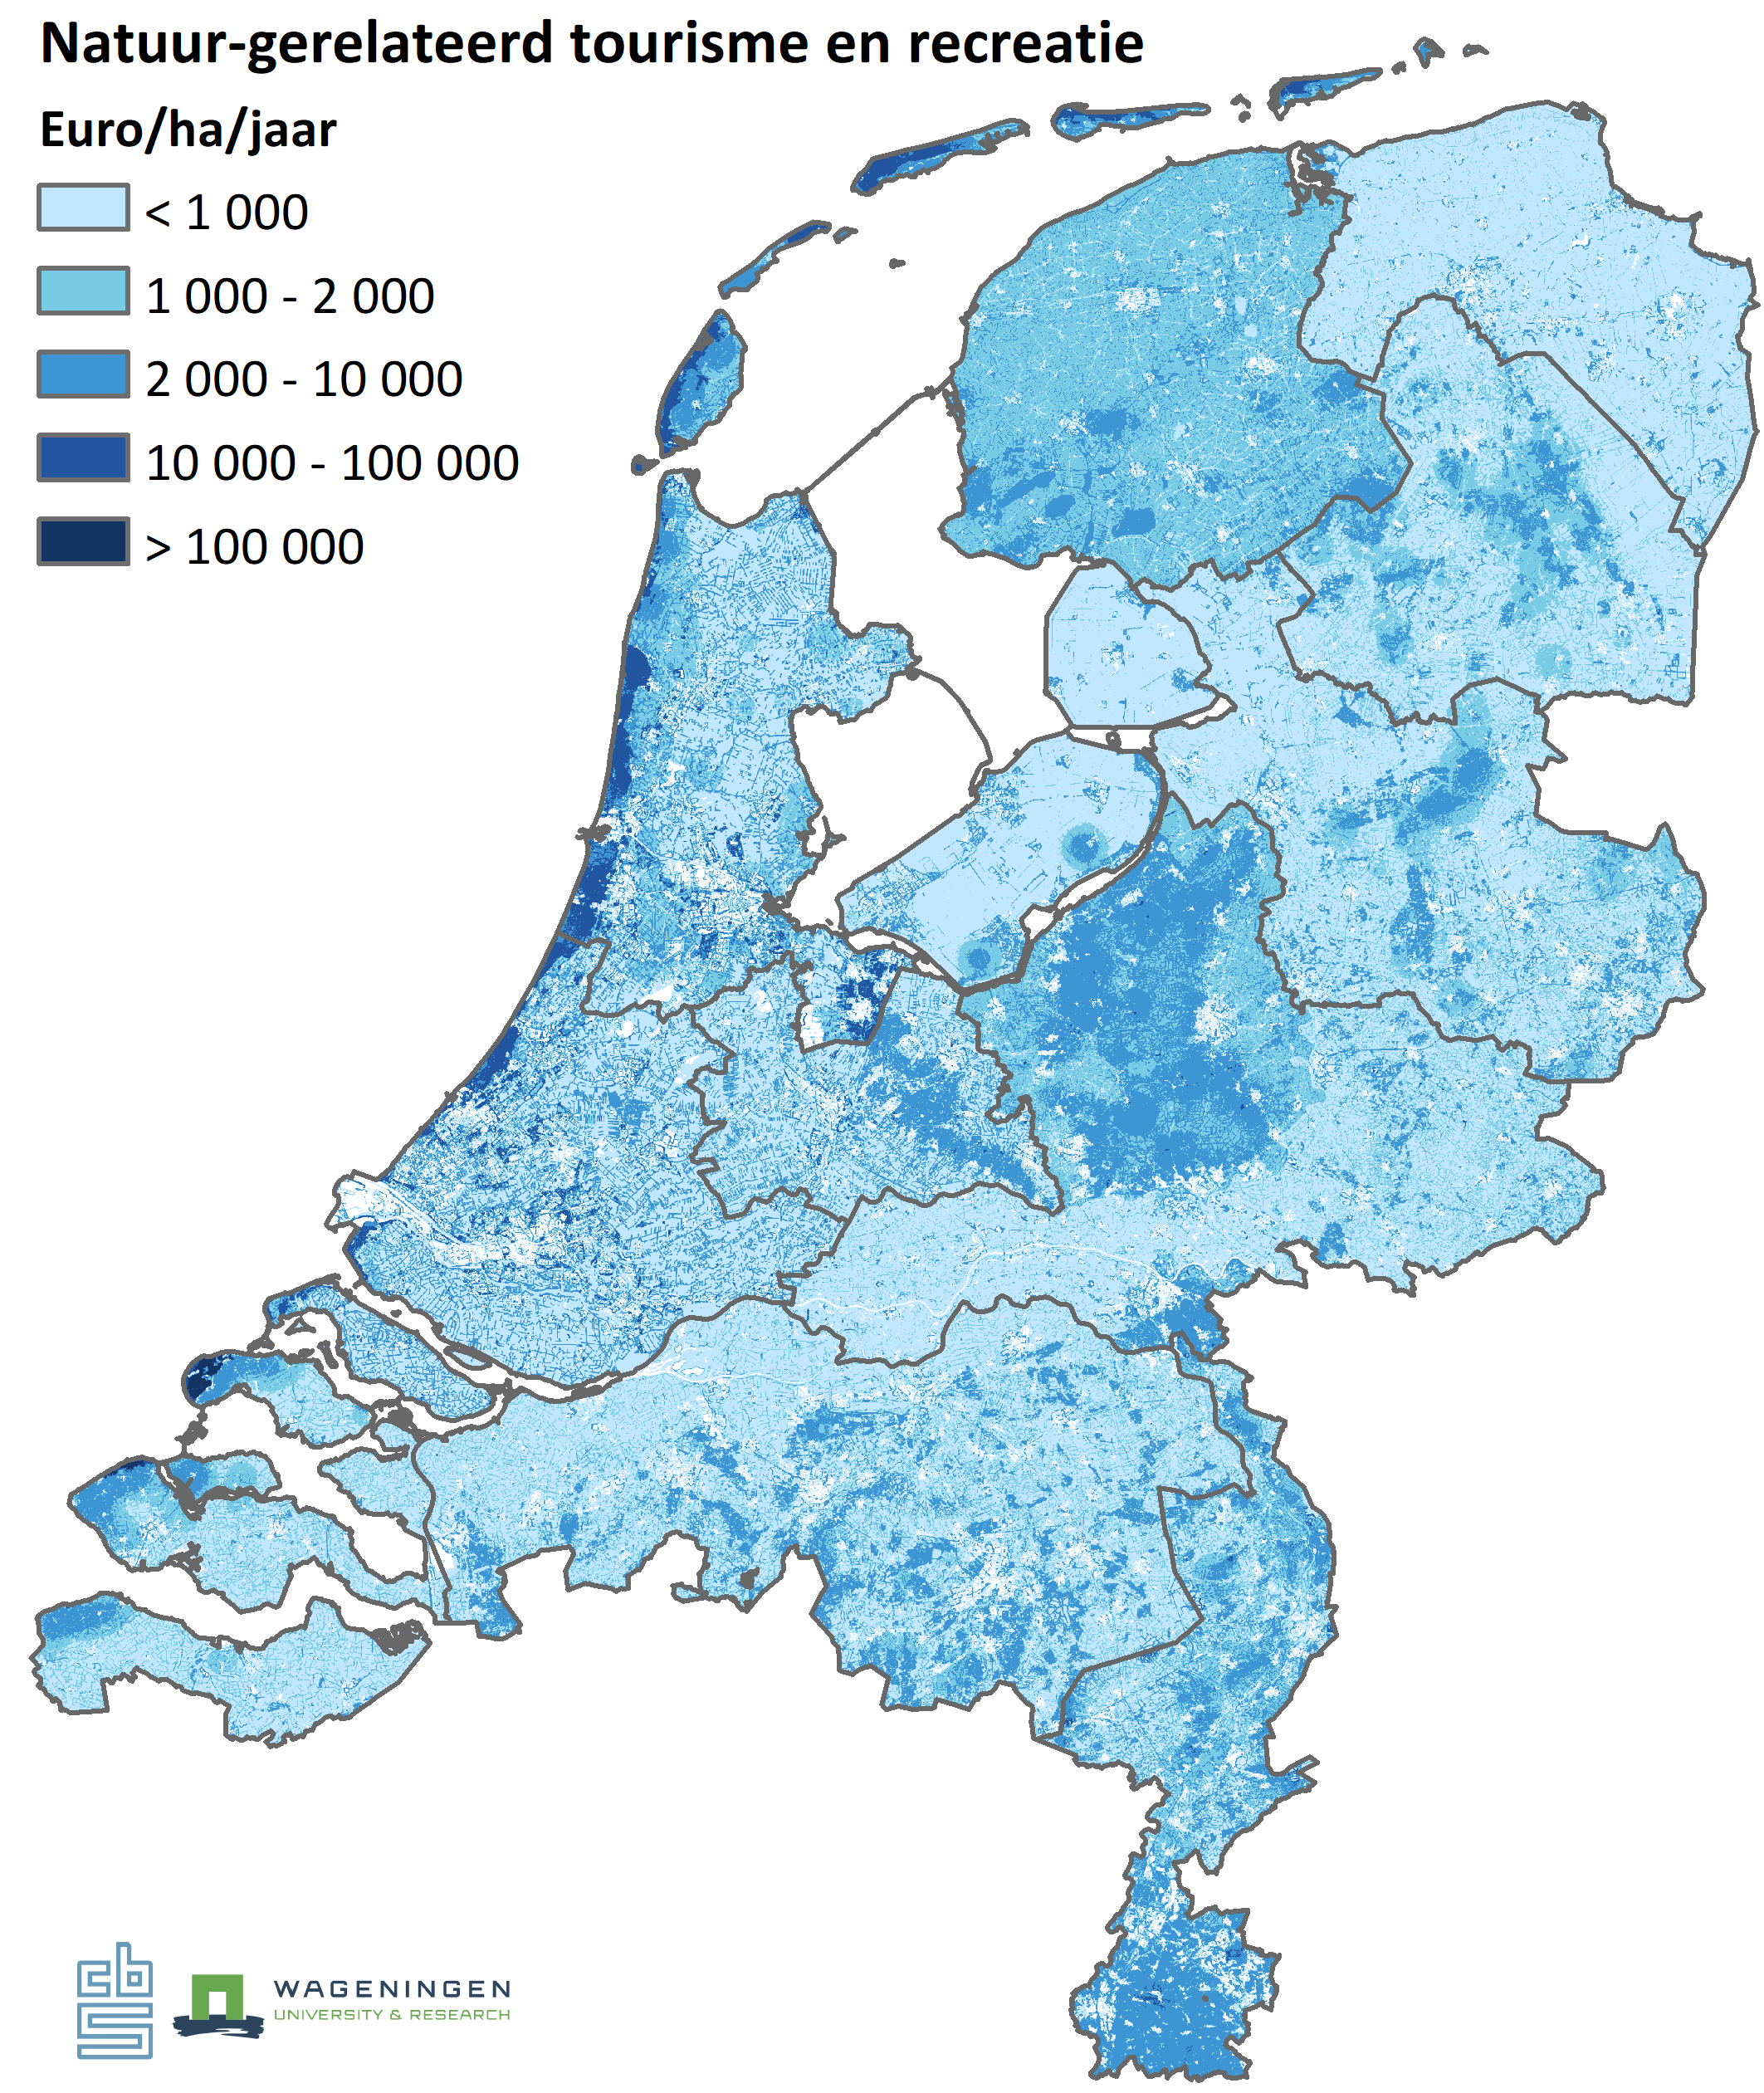 Deze figuur beschrijft een kaart van Nederland waarin de consumptieve bestedingen aan natuur-gerelateerd toerisme en recreatie te zien zijn. 